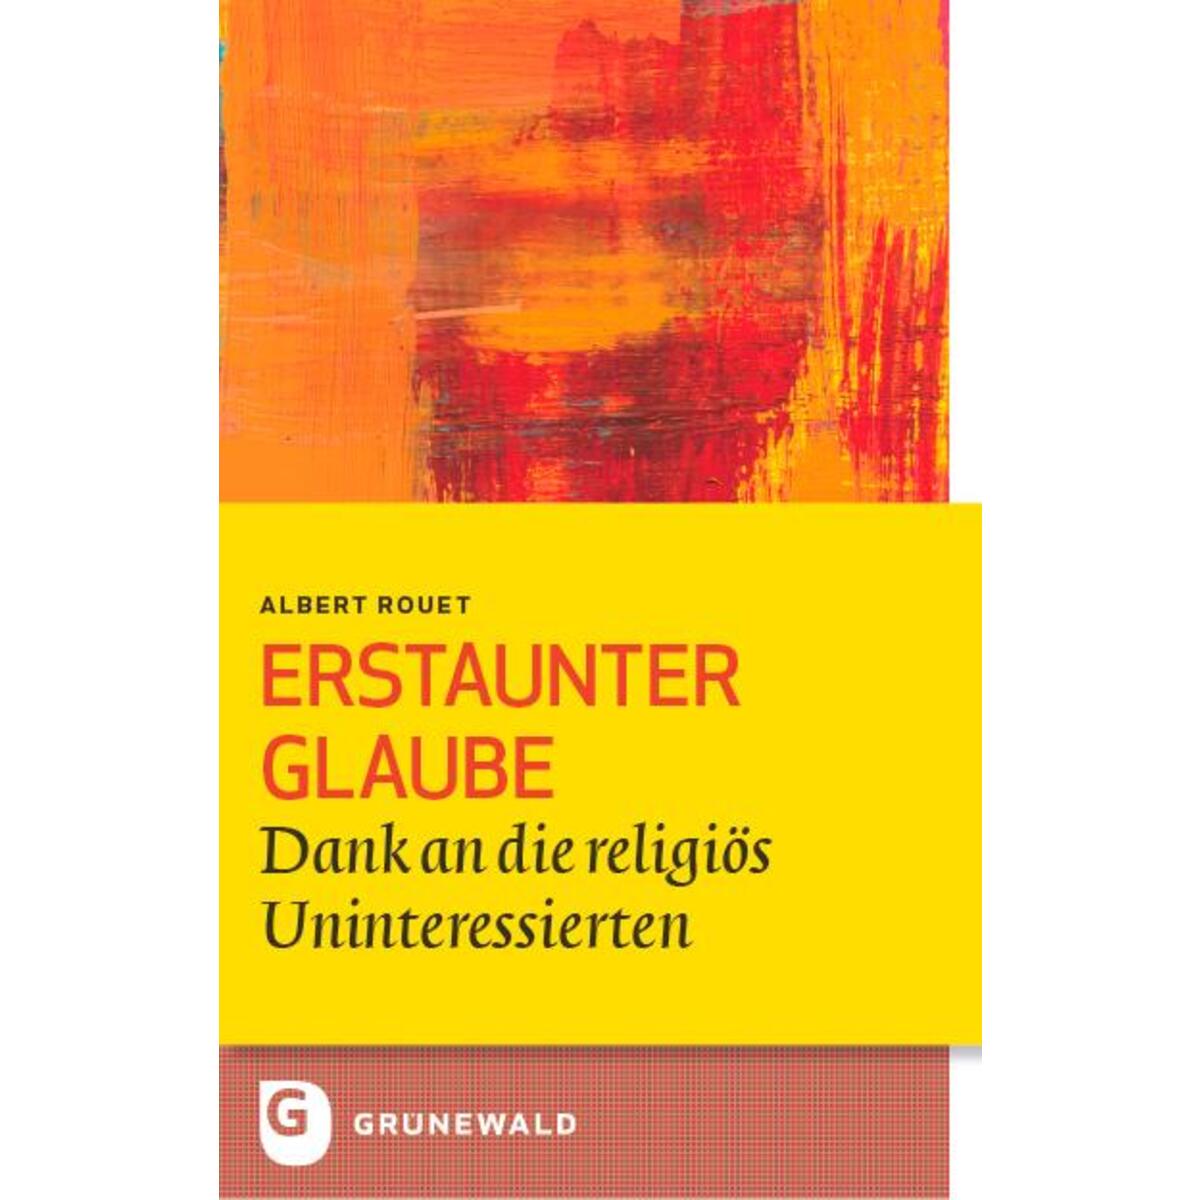 Erstaunter Glaube von Matthias-Grünewald-Verlag